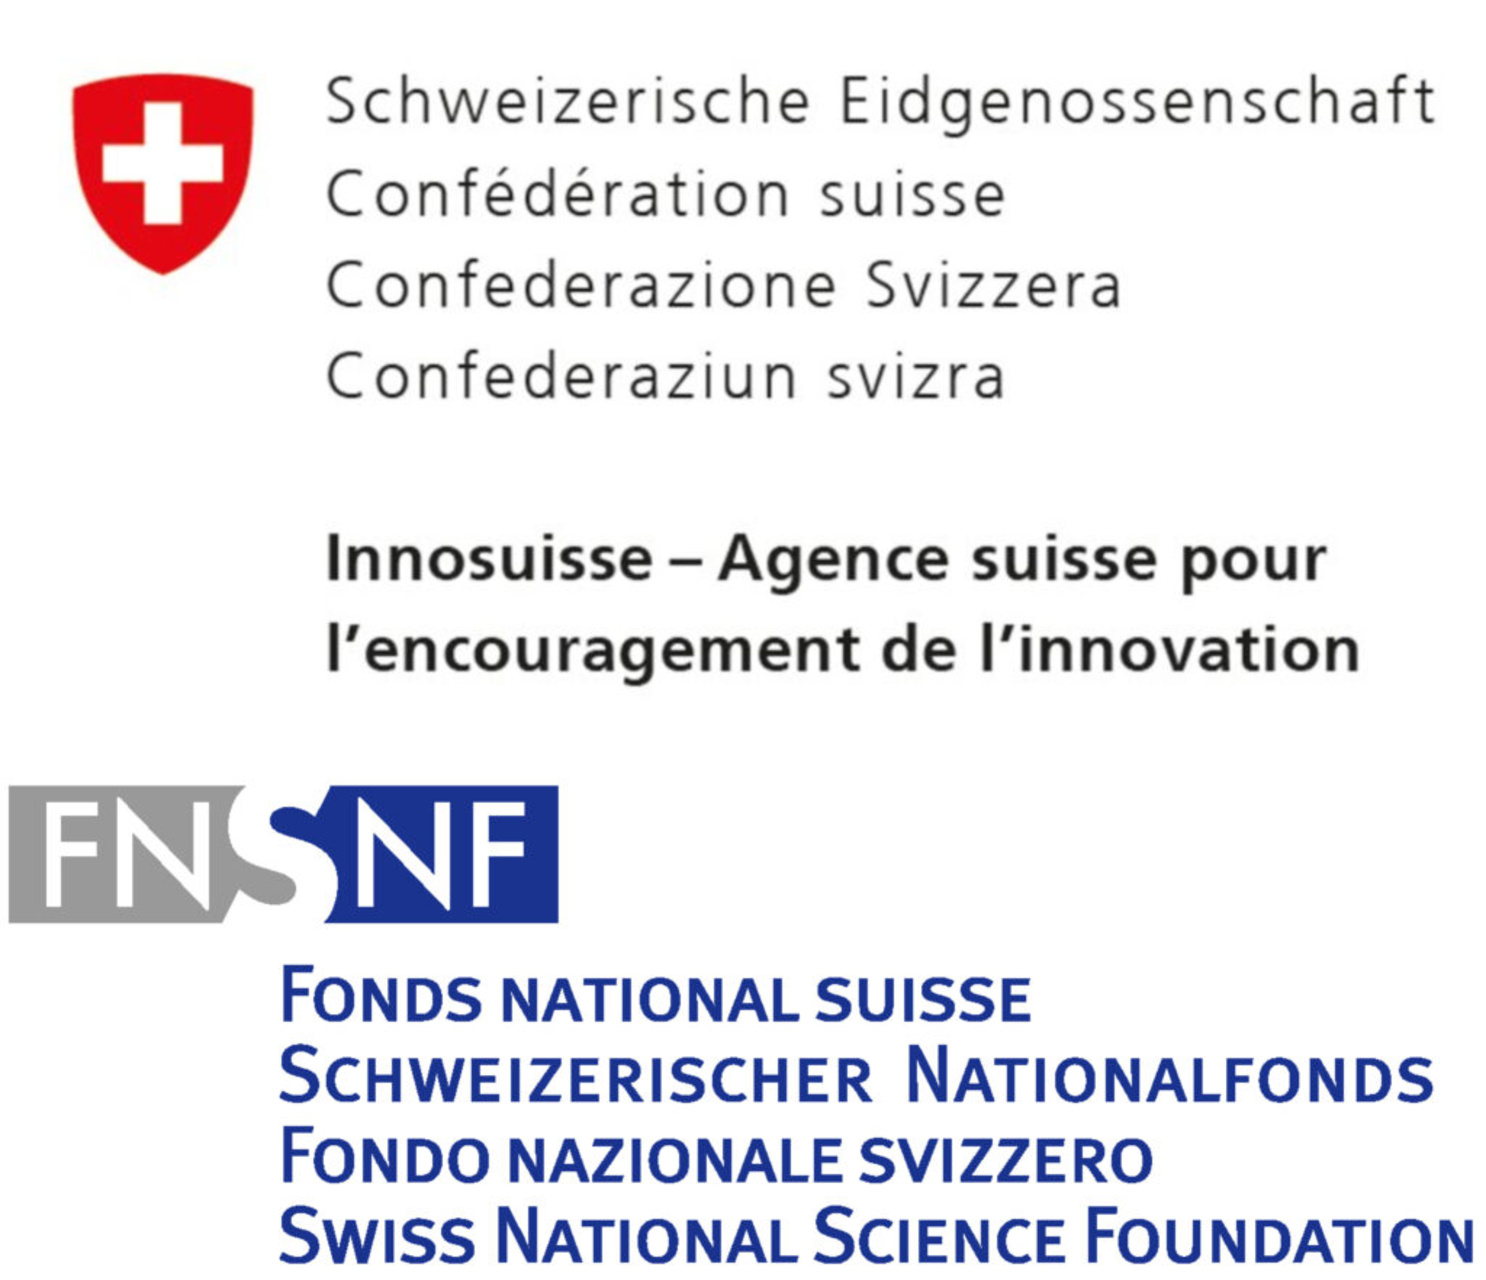 शिक्षा, अनुसंधान और नवाचार: चार साल की अवधि 2025-2028 में ईआरआई क्षेत्र को बढ़ावा देने और स्विट्जरलैंड के नेतृत्व के लिए संघीय परिषद की संसद को संदेश